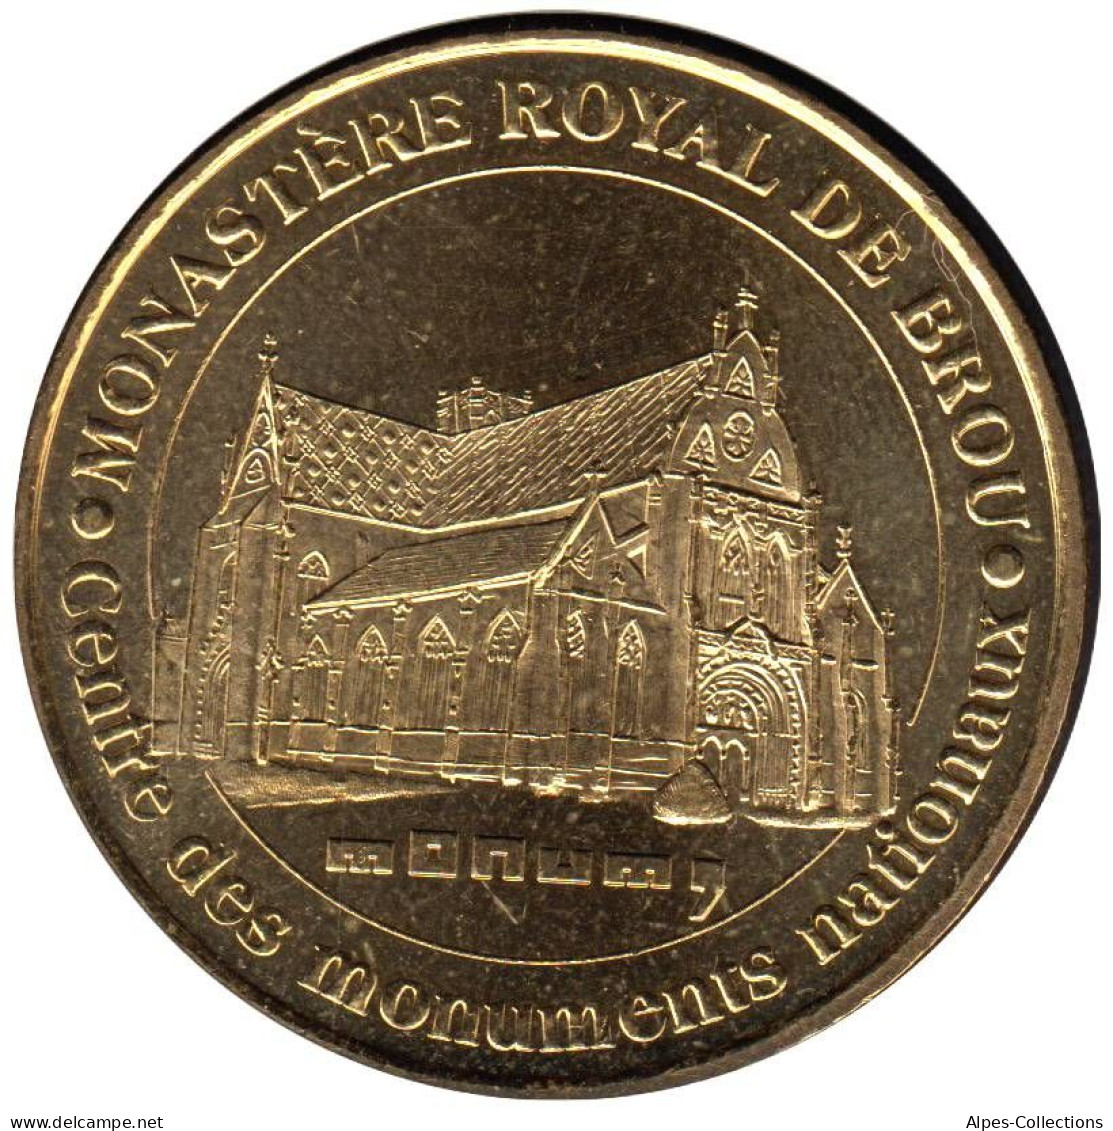 01-0002 - JETON TOURISTIQUE MDP - Monastère Royal De Brou - MONUM - 2007.2 - 2007